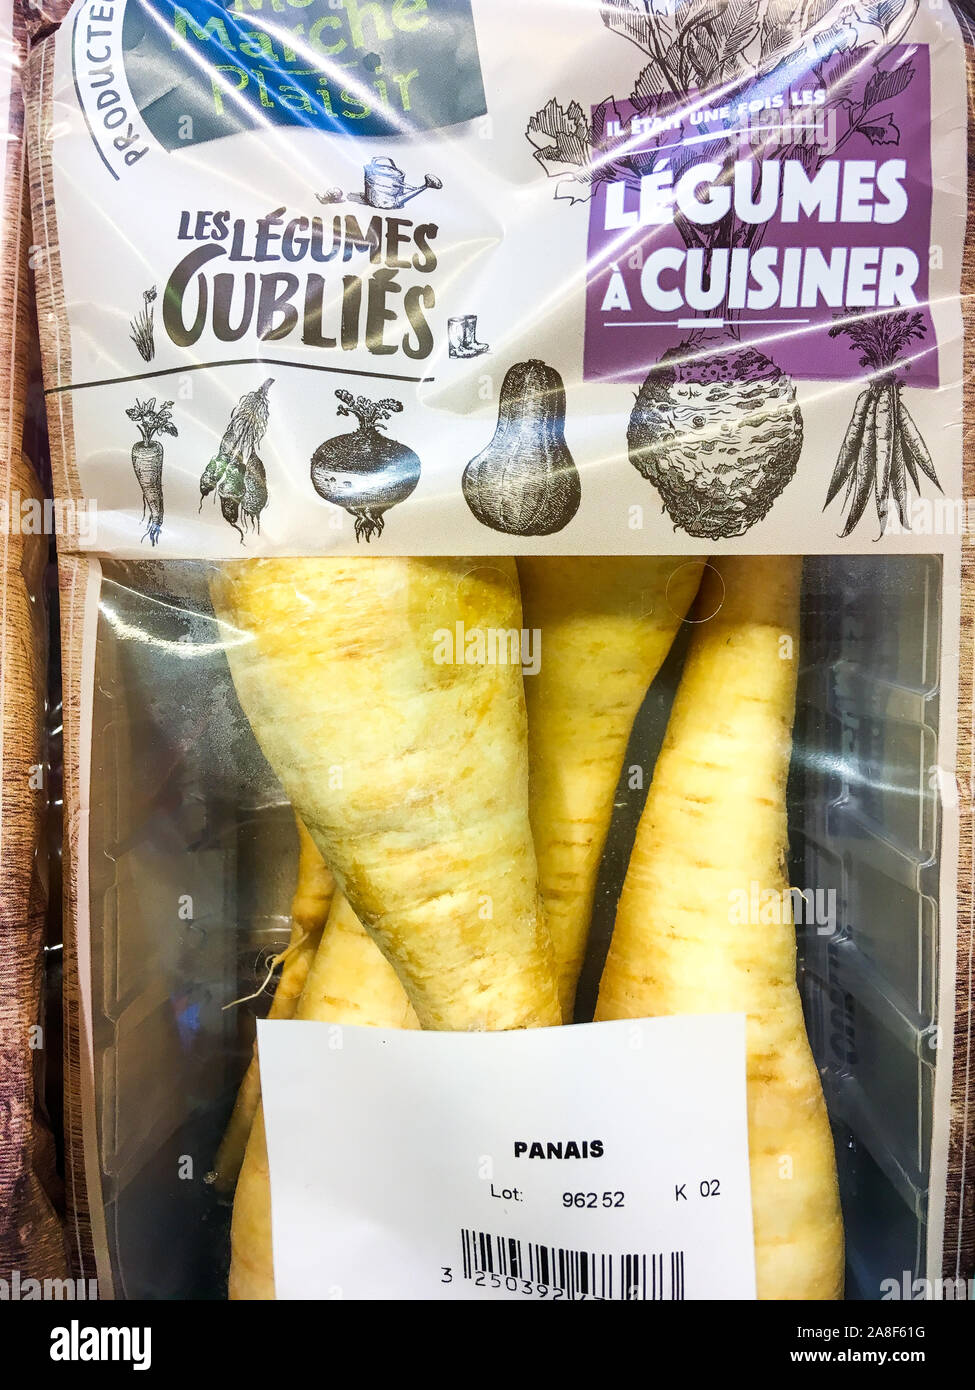 Légumes oubliés sous emballage plastique, Lyon, France Banque D'Images